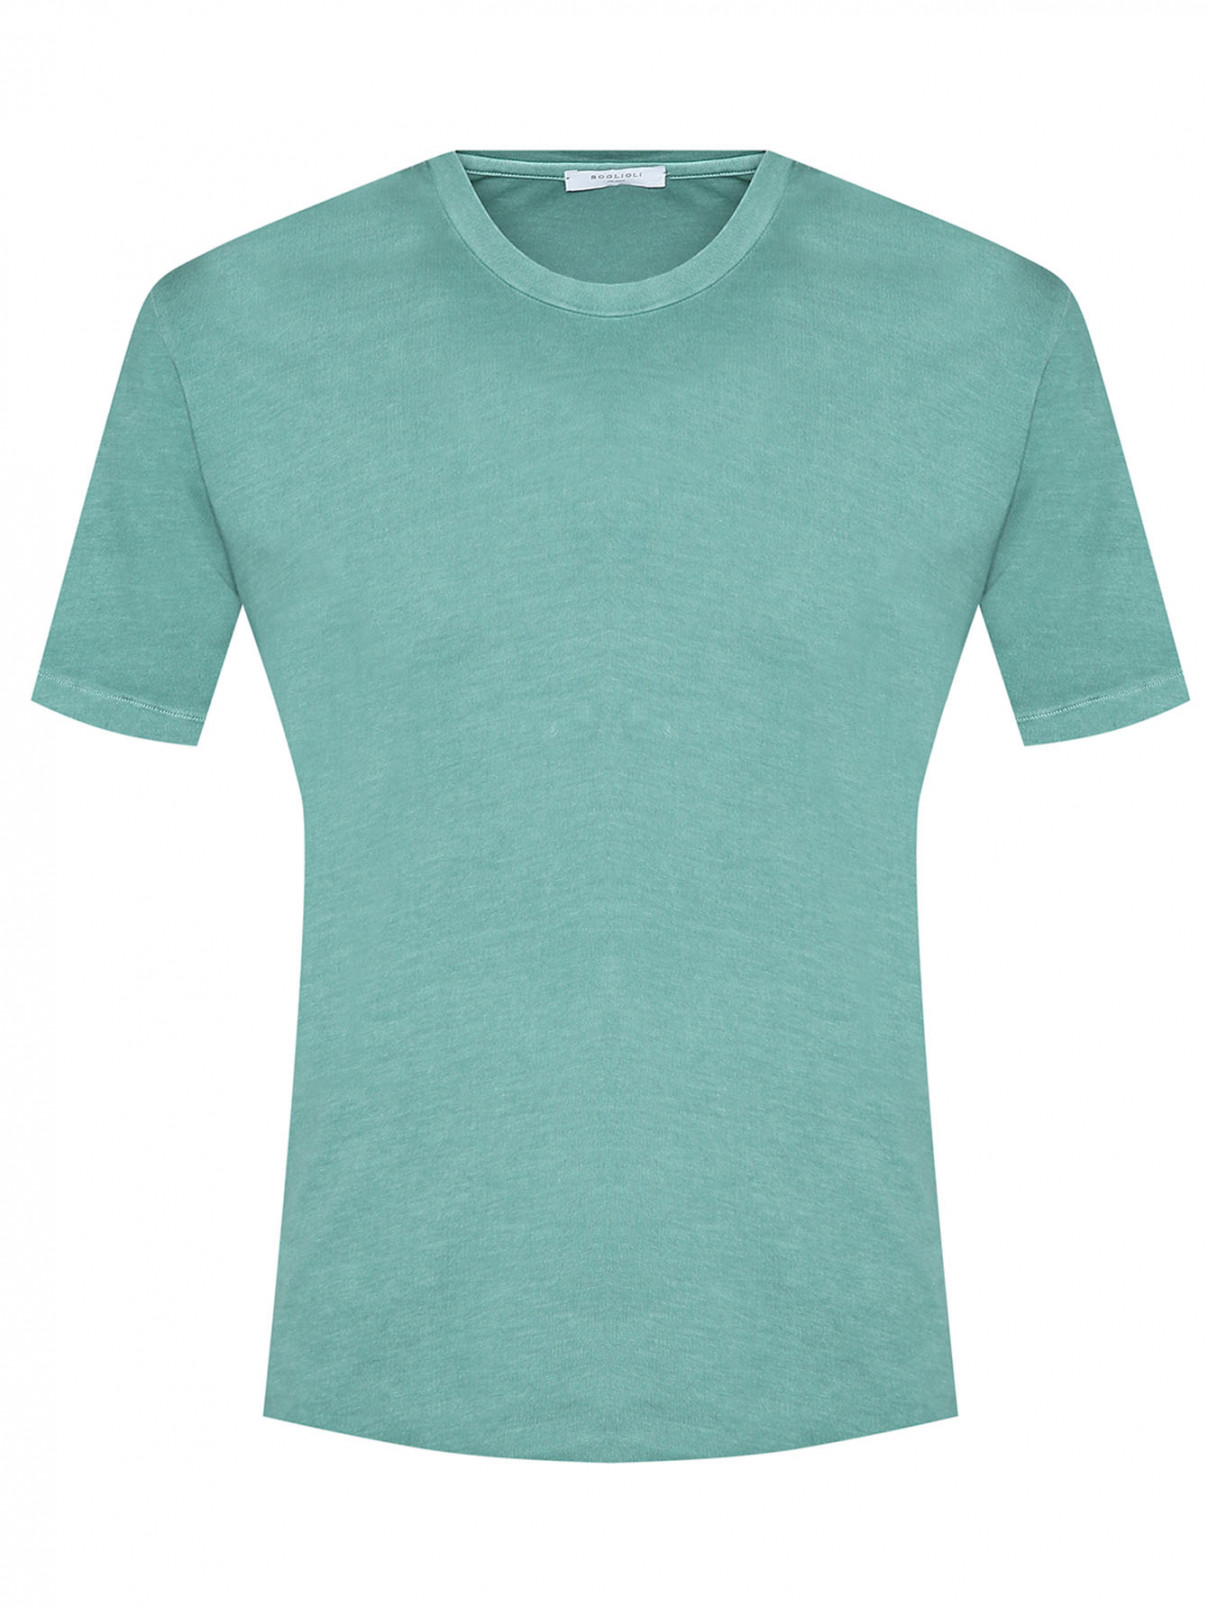 Однотонная футболка из хлопка Boglioli  –  Общий вид  – Цвет:  Зеленый